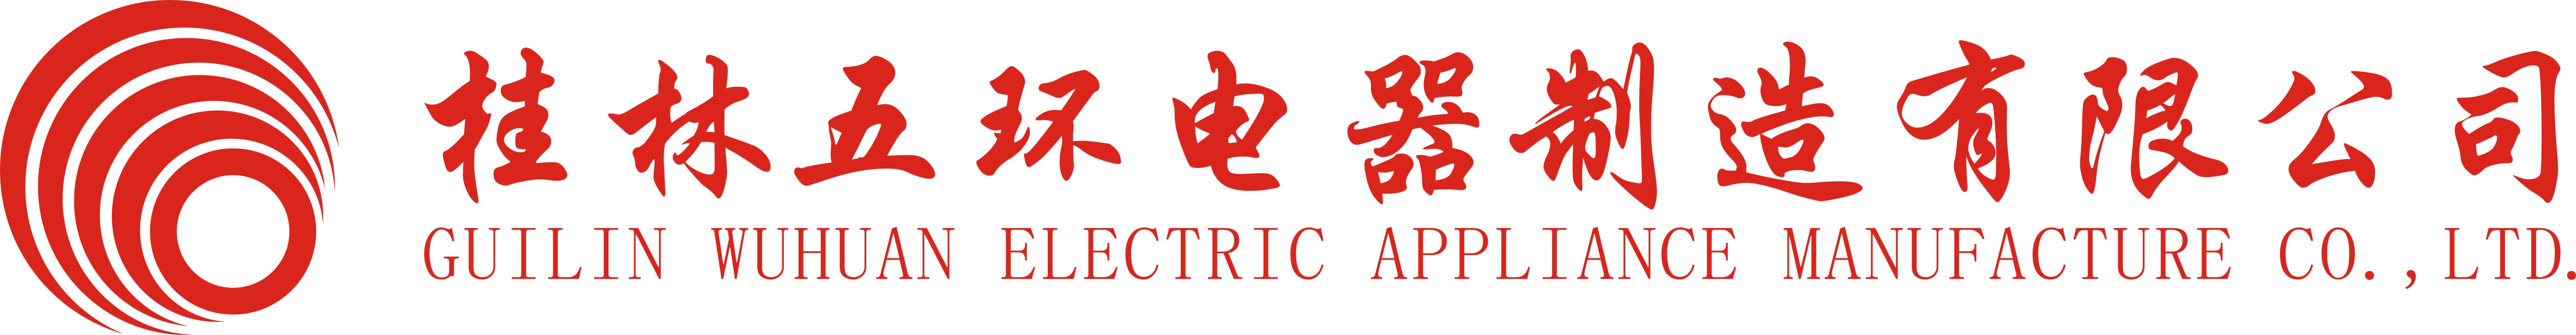 桂林五环电器制造有限公司